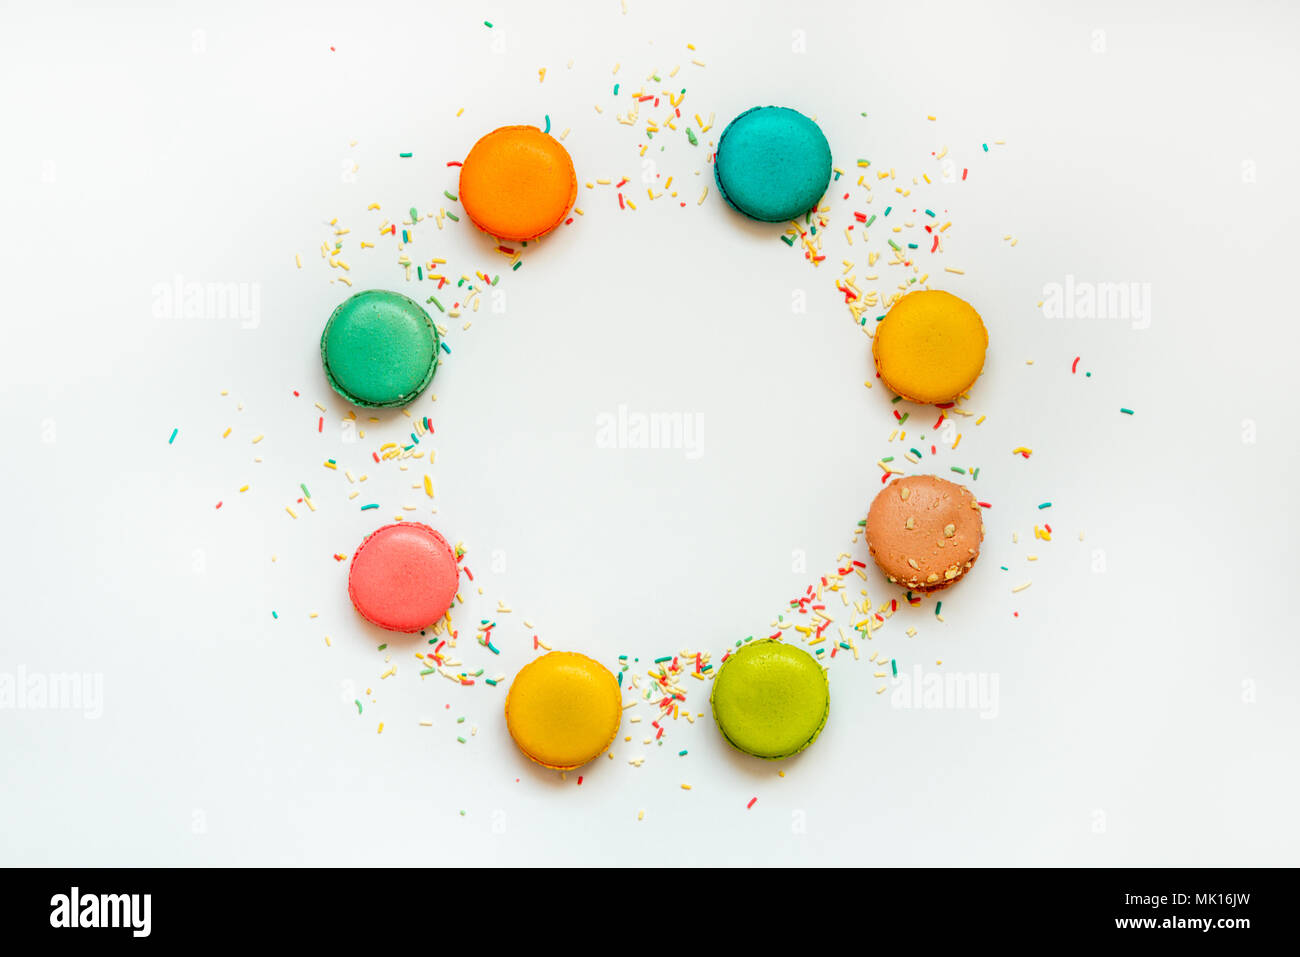 Vue de dessus de macarons colorés et saupoudre de sucre disposées en cercle sur fond blanc. Copier l'espace. Banque D'Images